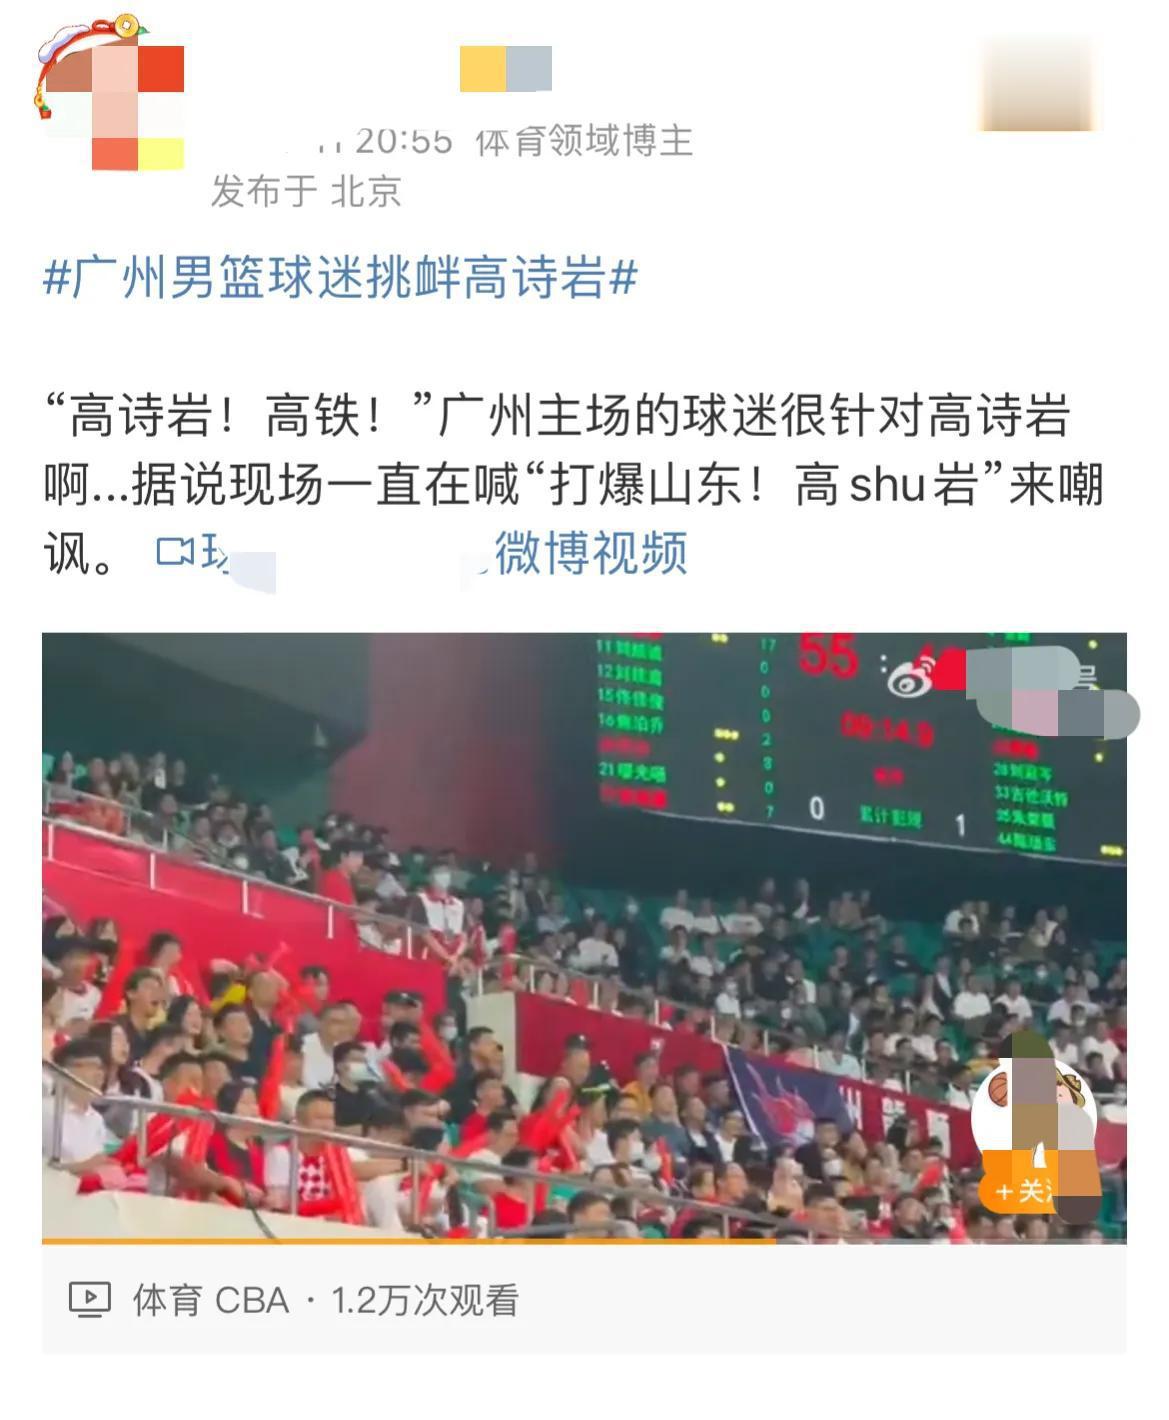 成王败寇！广州男篮球迷疯狂挑衅高诗岩，言语不堪入目，山东男篮惨败无力还击。

媒